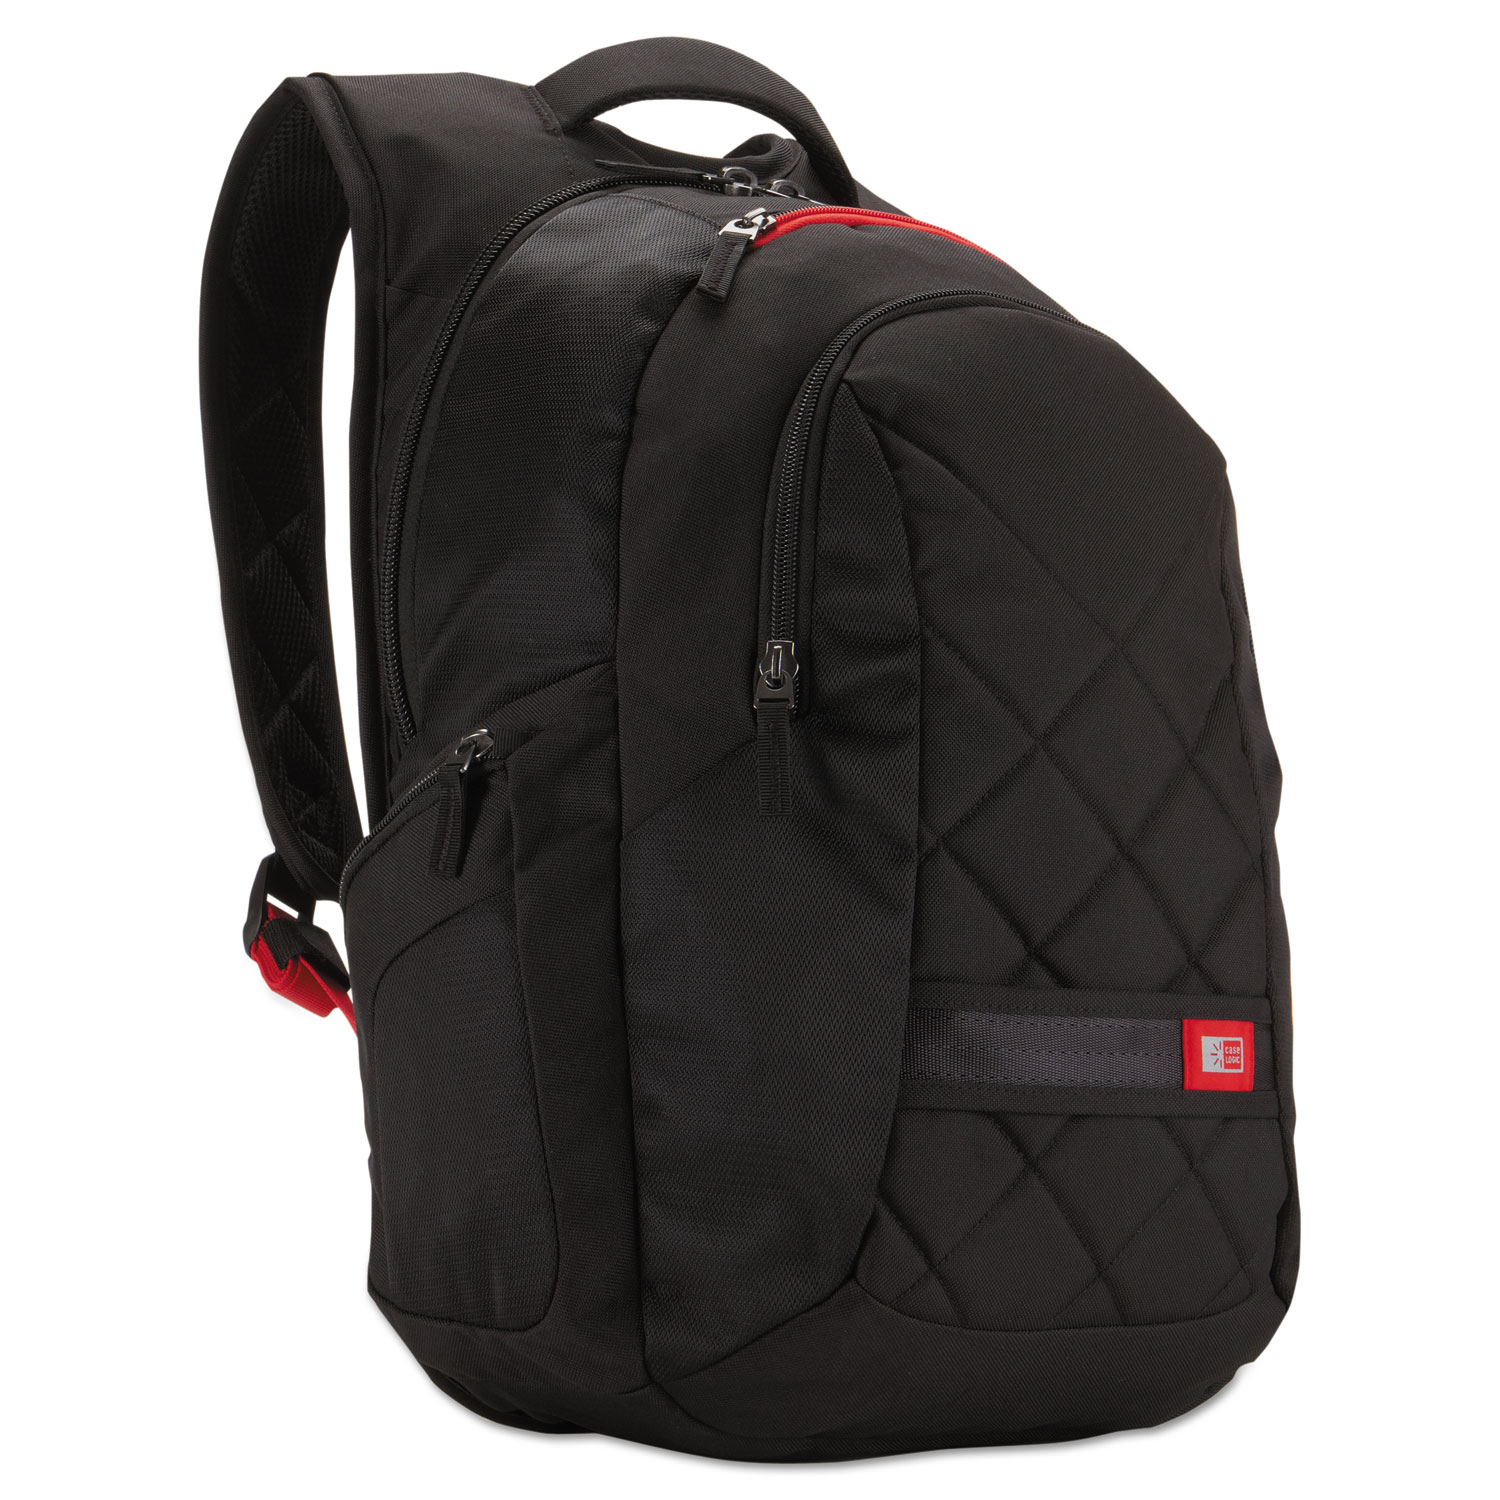  Case Logic 3201268 16 Laptop Backpack, 9 1/2 x 14 x 16 3/4, Black (CLG3201268) 